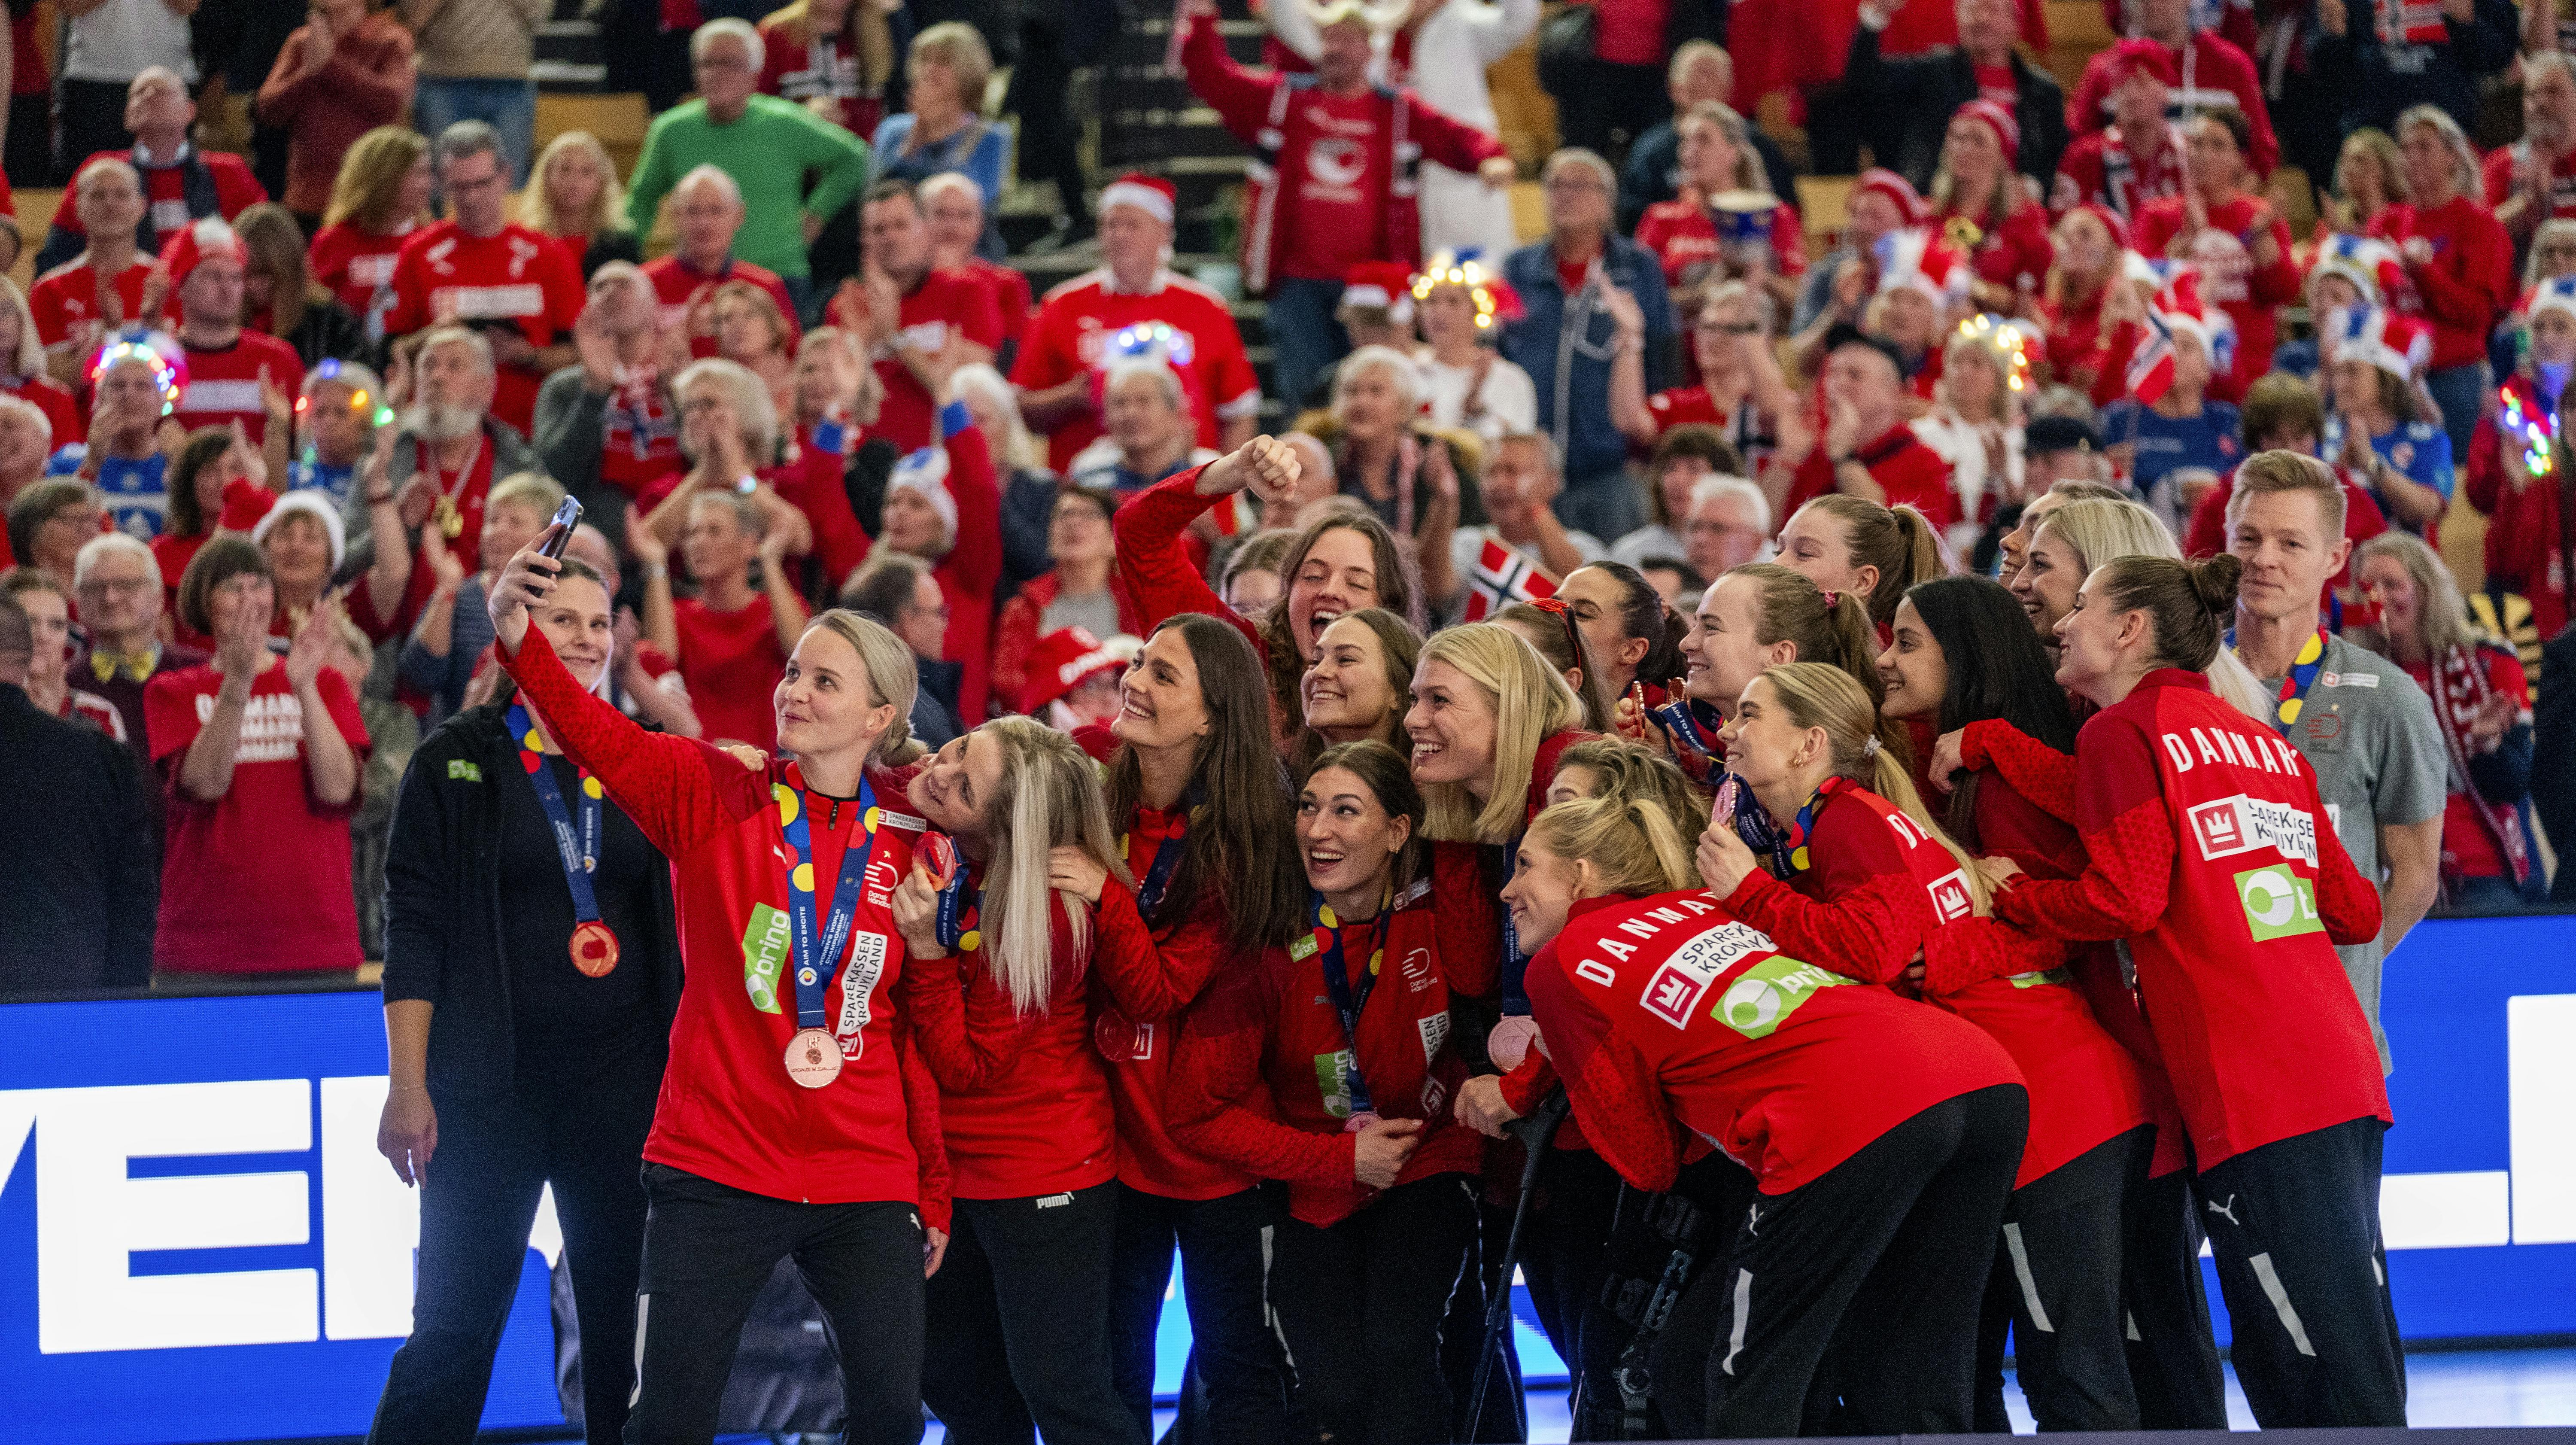 Danmarks EM-gruppe blev torsdag aften fundet. De danske håndboldkvinder møder Færøerne, Kroatien og Schweiz til december.